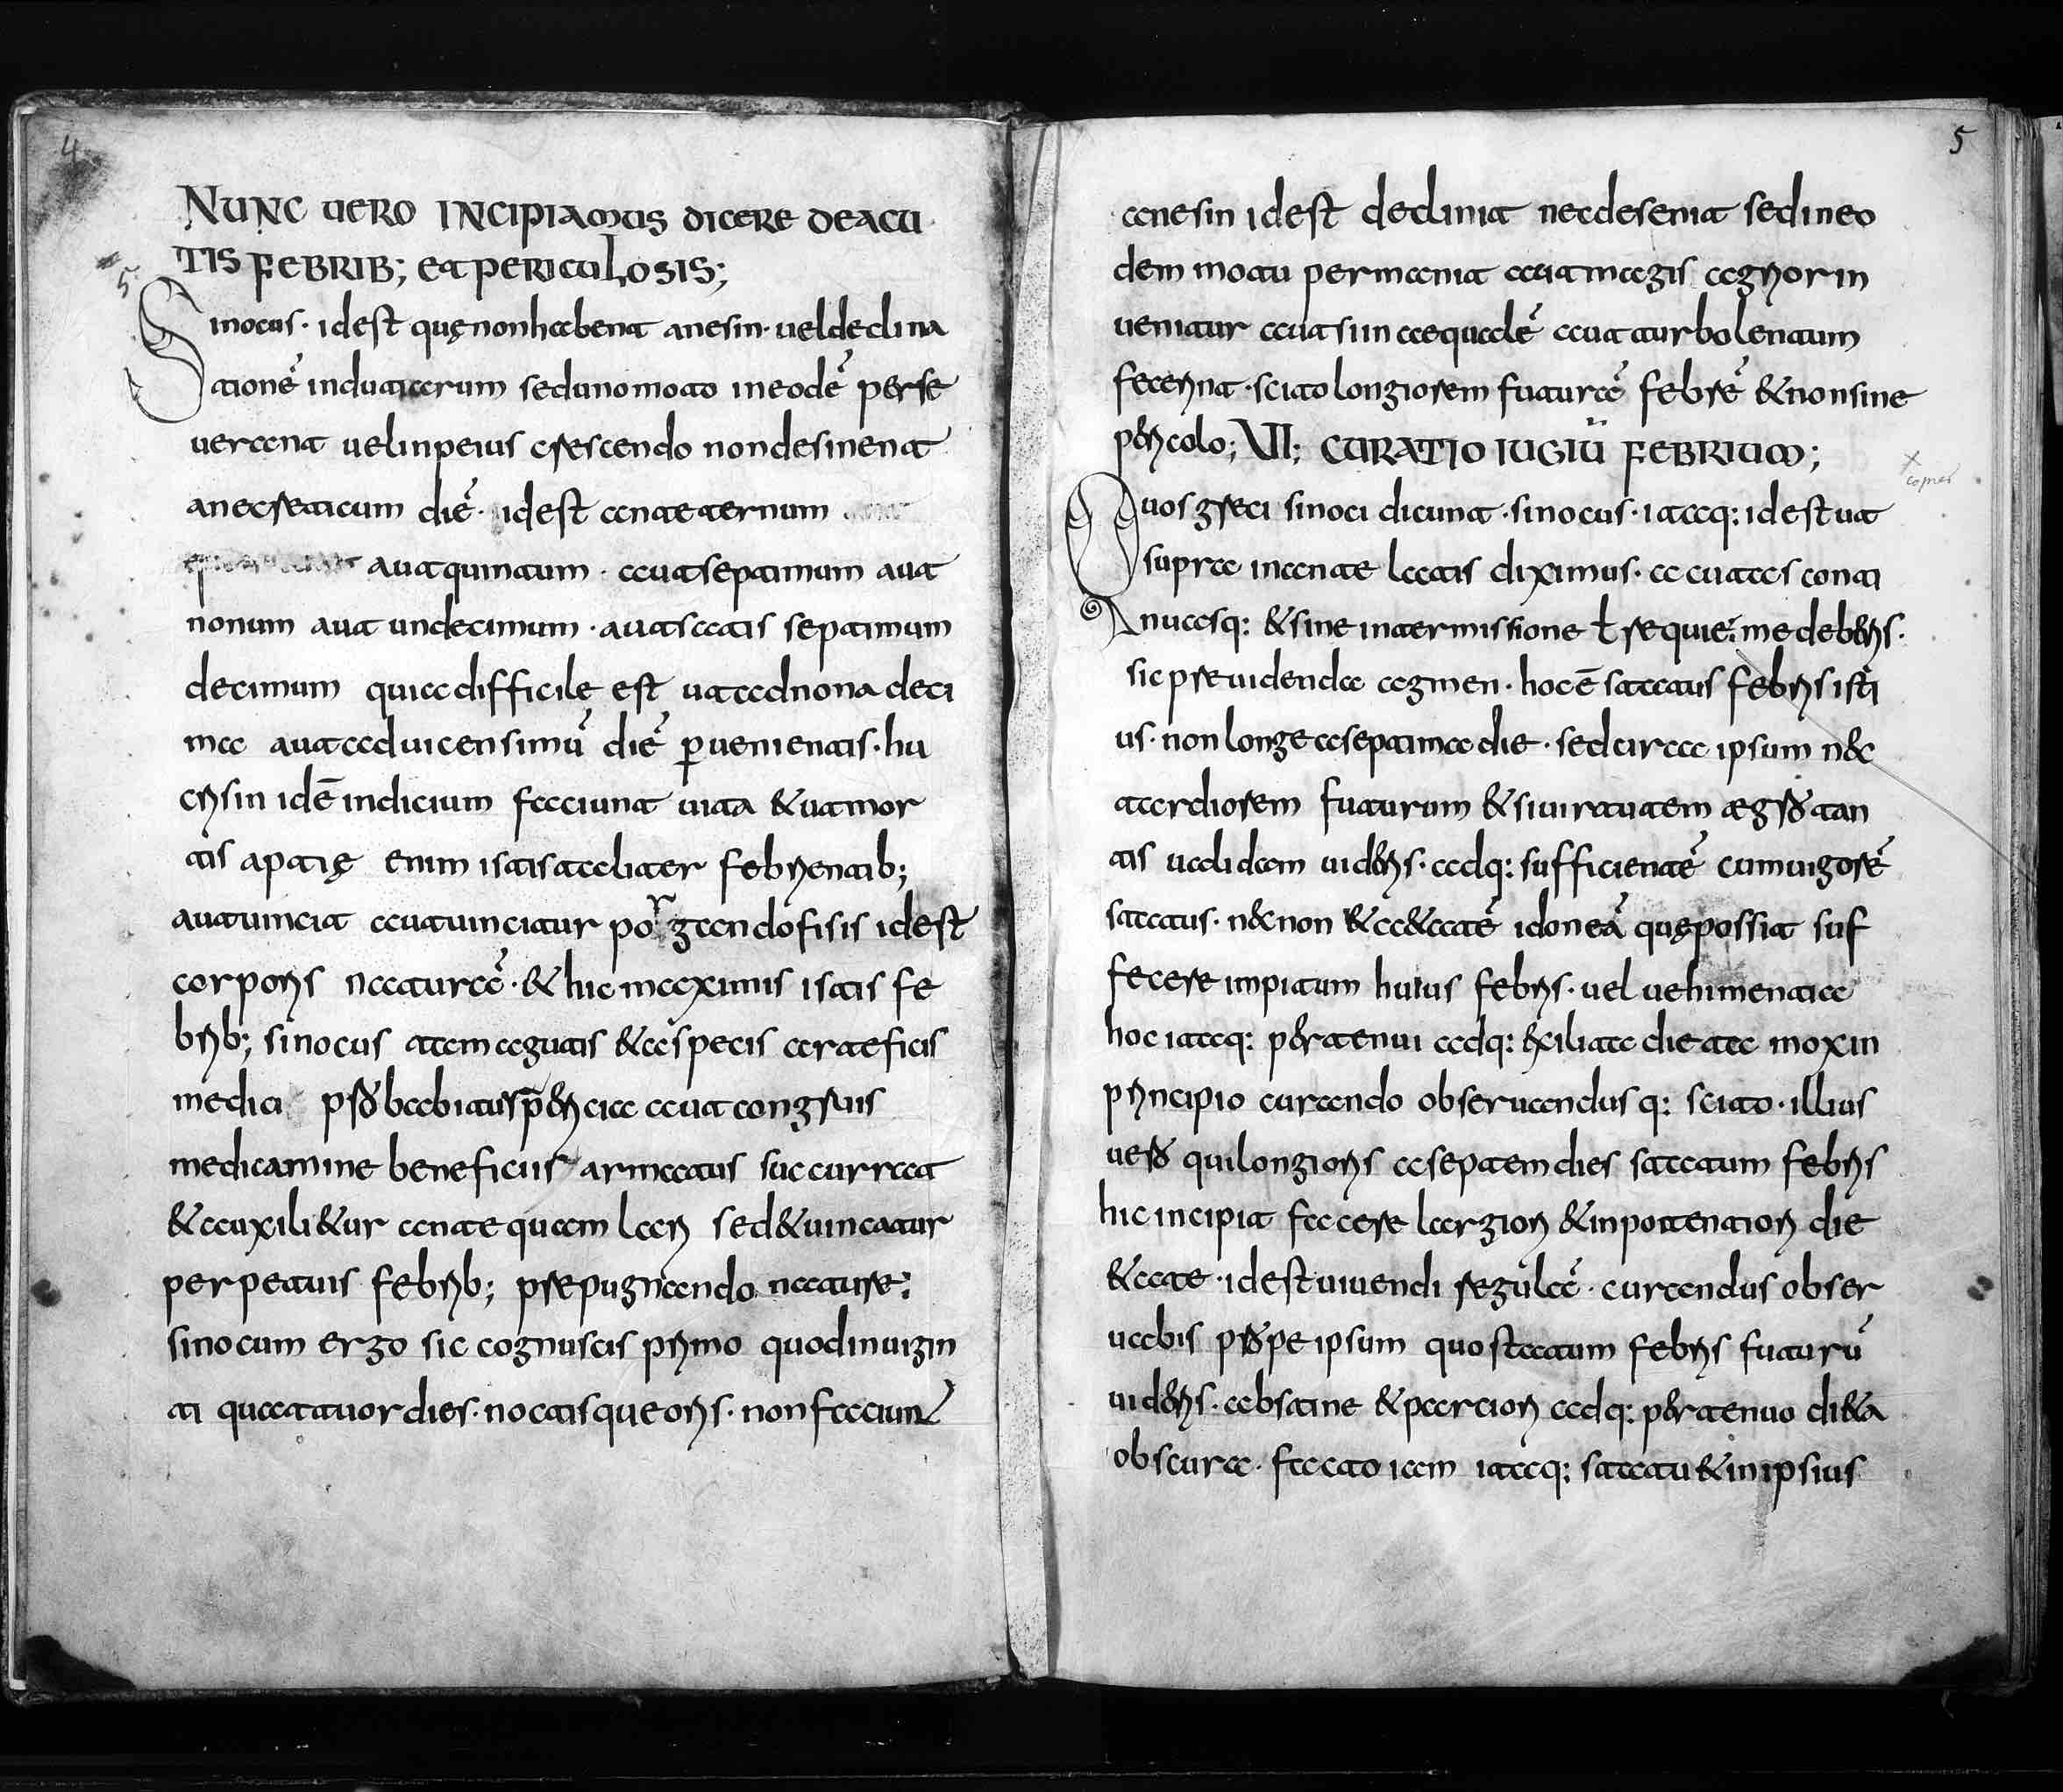 9th-c. work on medicine attributed to Galen from Kloster Einsiedeln (HMML 49539)